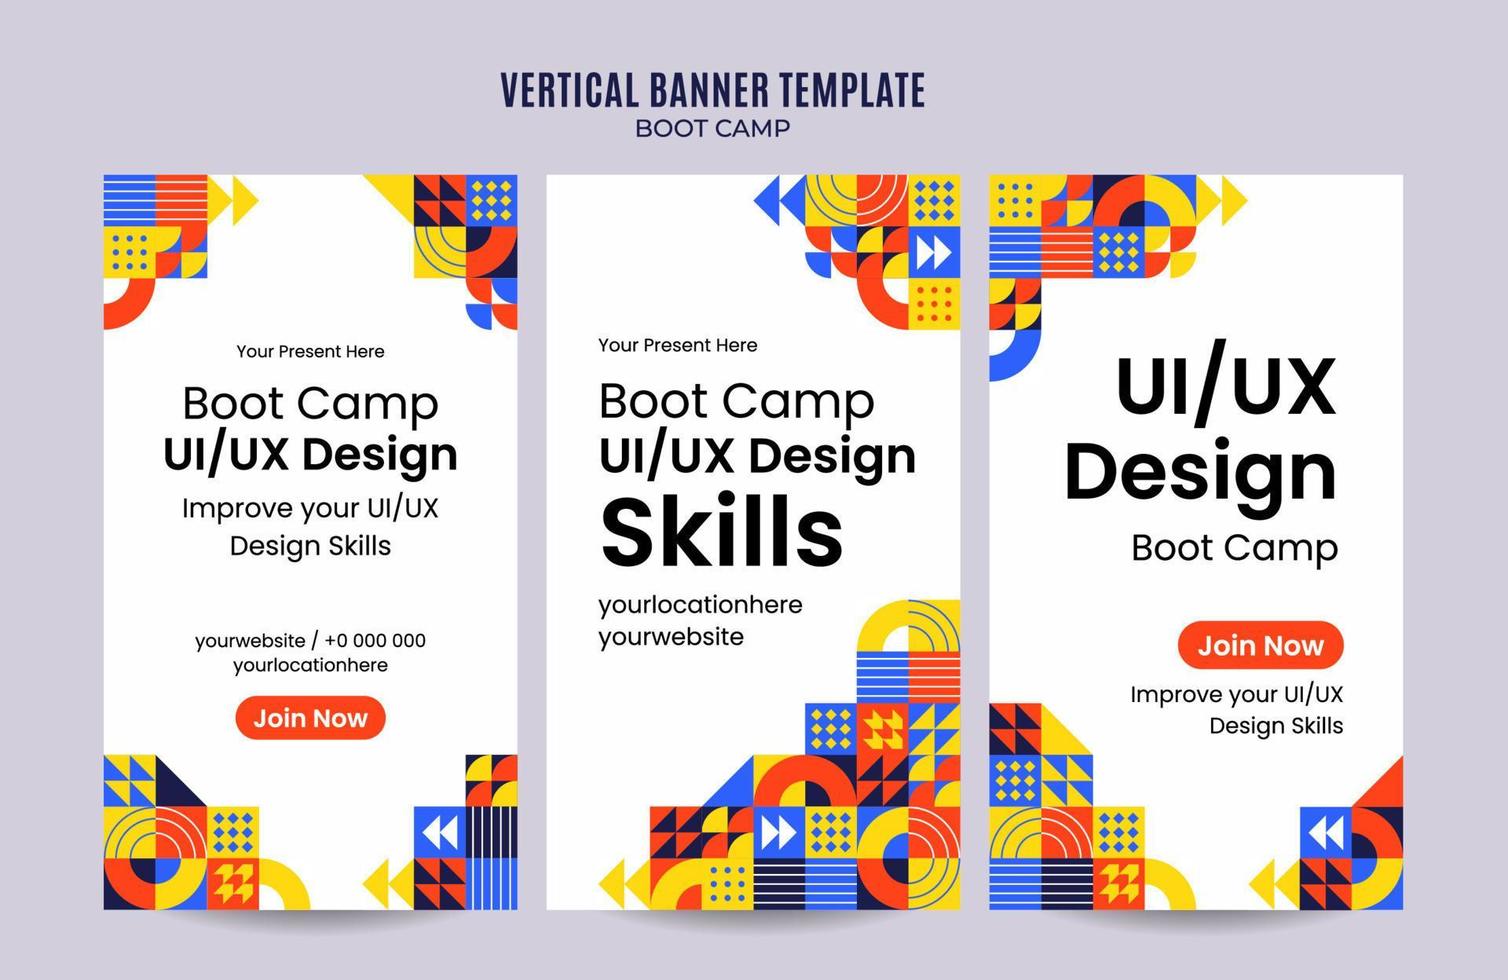 moderne geometrie - bootcamp-webbanner für vertikale plakate, banner, raumfläche und hintergrund sozialer medien vektor